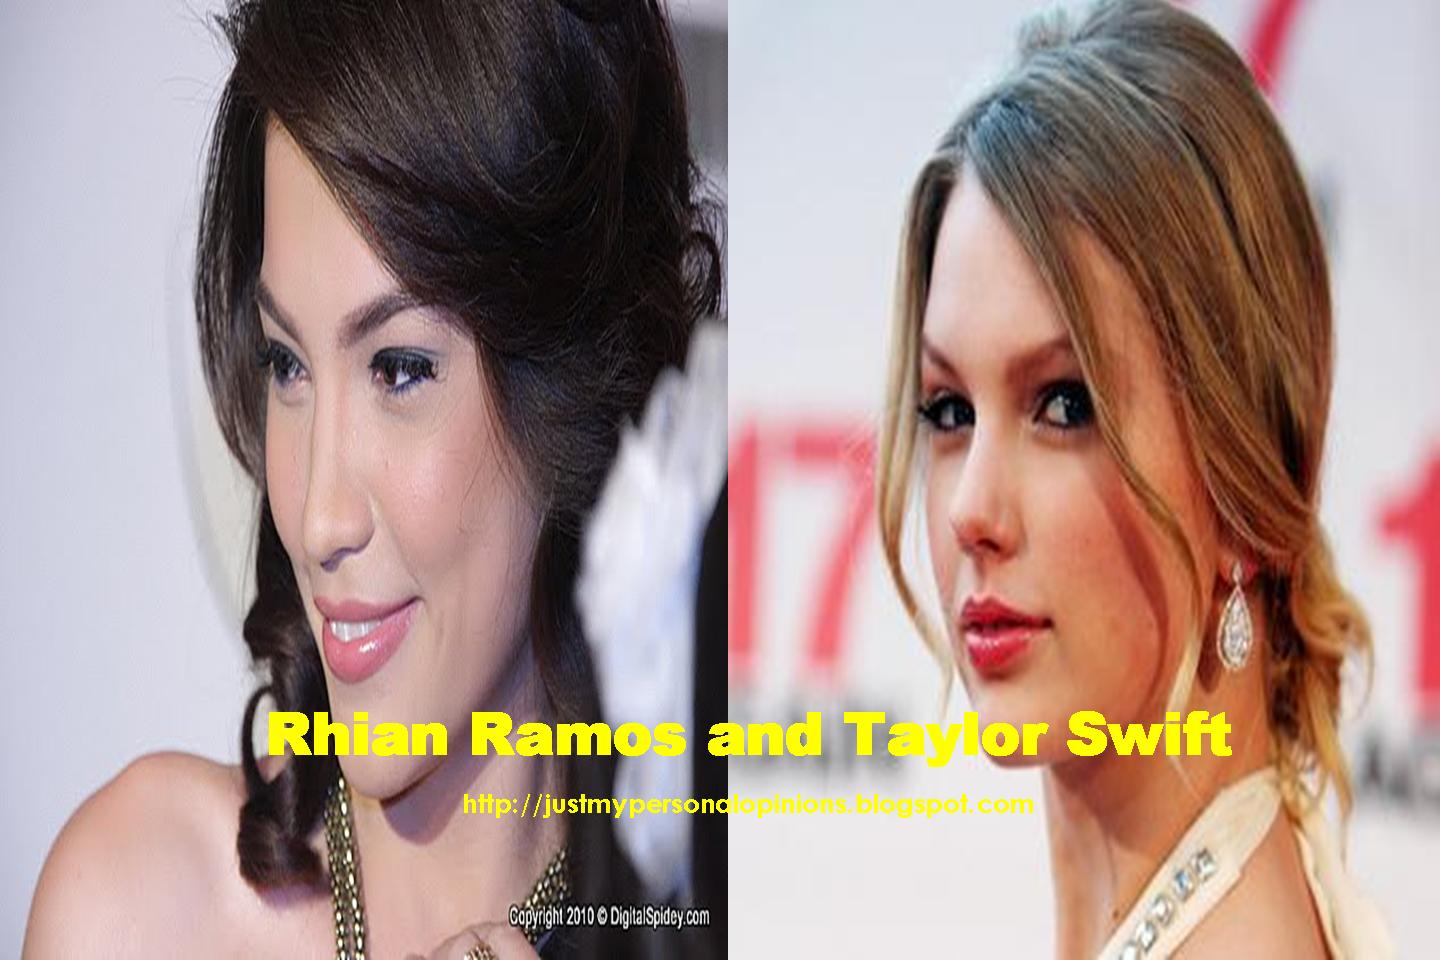 http://2.bp.blogspot.com/_taZJUdNwXOY/TLr5lrTNDVI/AAAAAAAAAjk/V1Odlml6mrw/s1600/Rhian+Ramos+-+Taylor+Swift+2.jpg